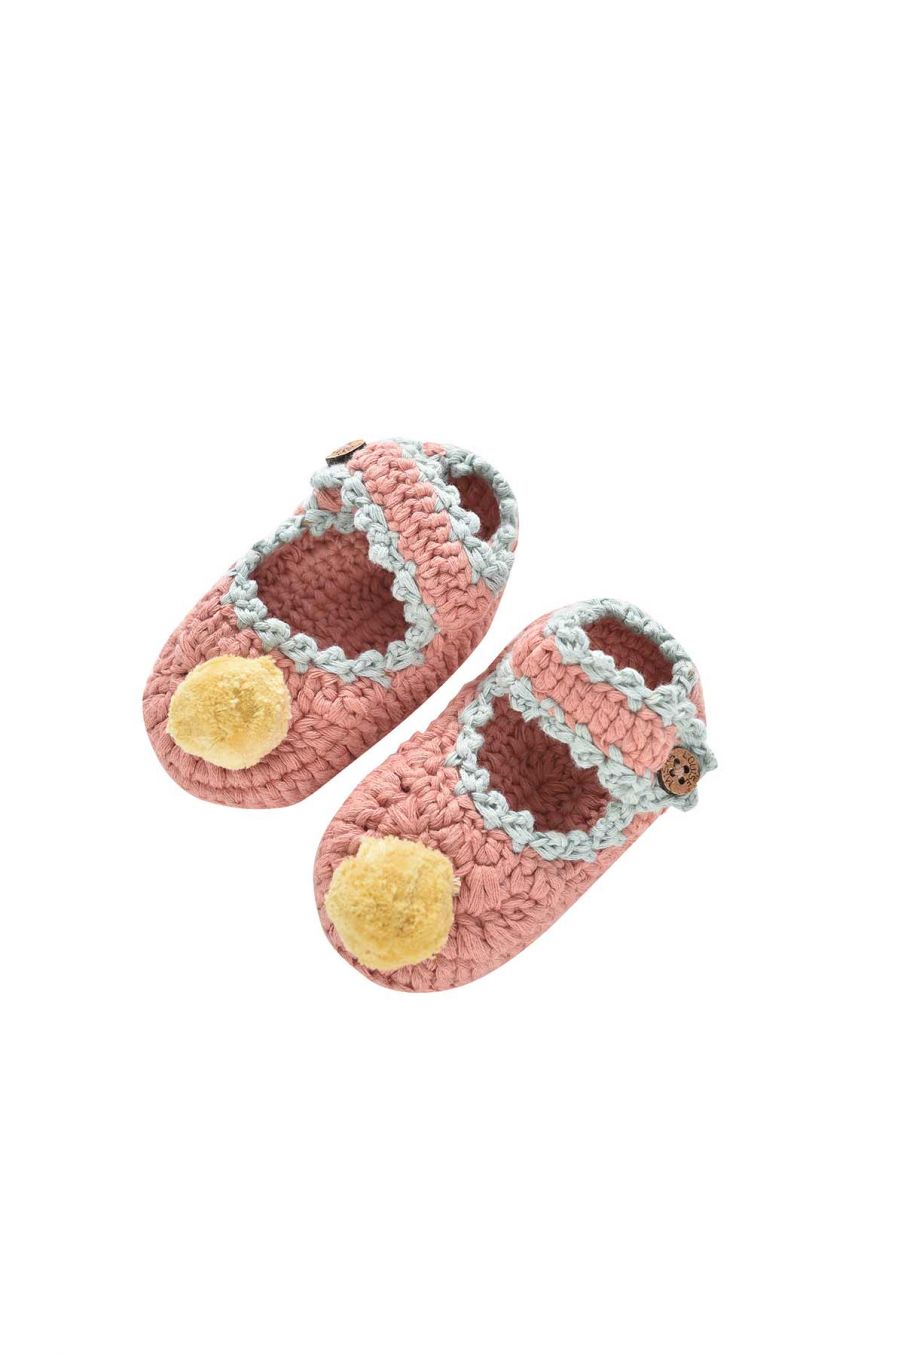 baby-girls-slippers-rosette-sienna